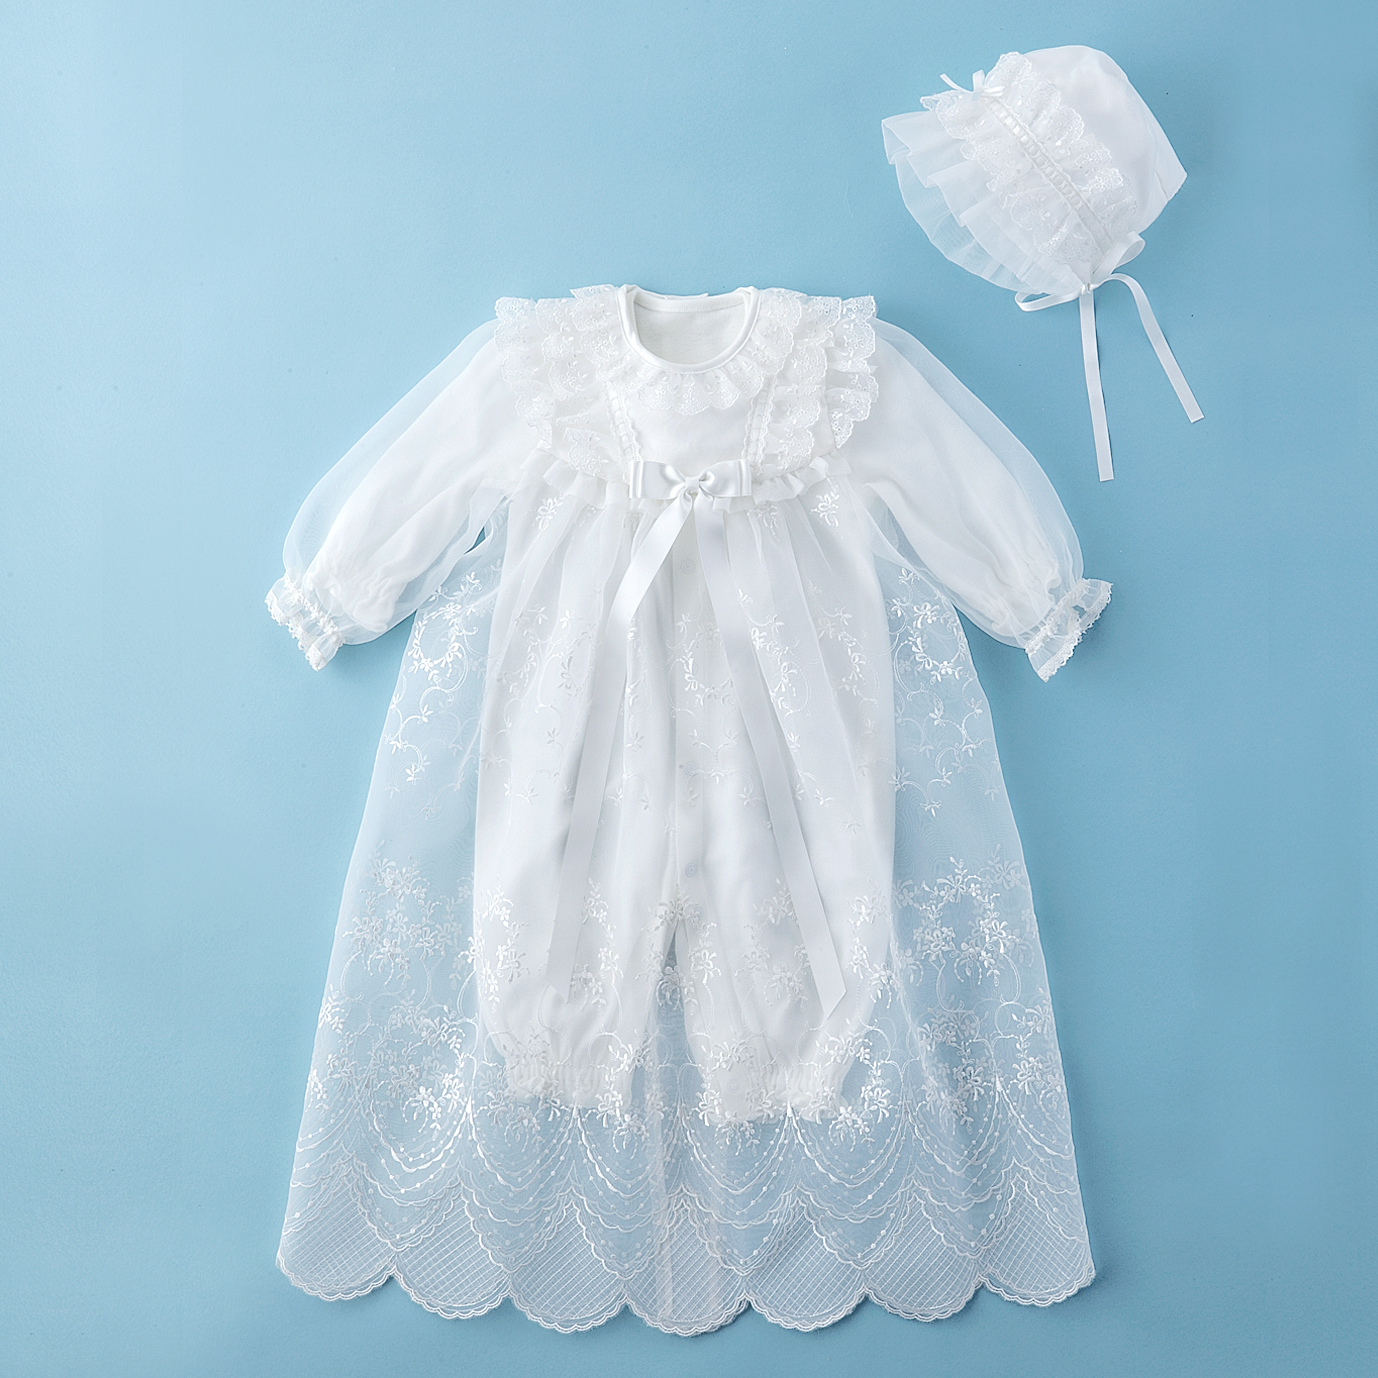 赤ちゃんの城 ベビーセレモニードレス セット | hartwellspremium.com